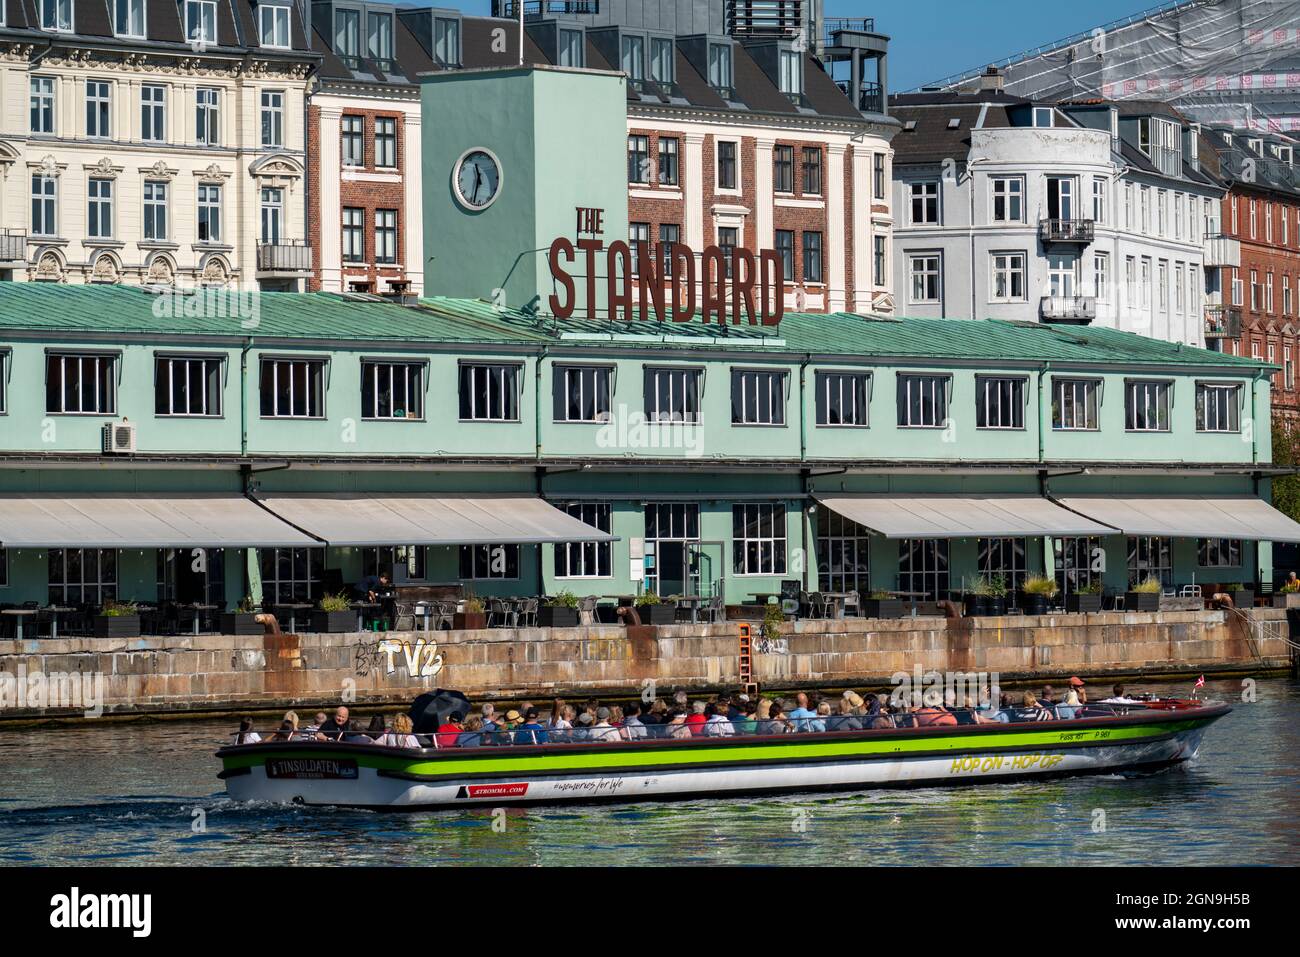 Former customs house, now restaurants, The Standart, on the harbour, canal cruise boat, Copenhagen, Denmark, Stock Photo